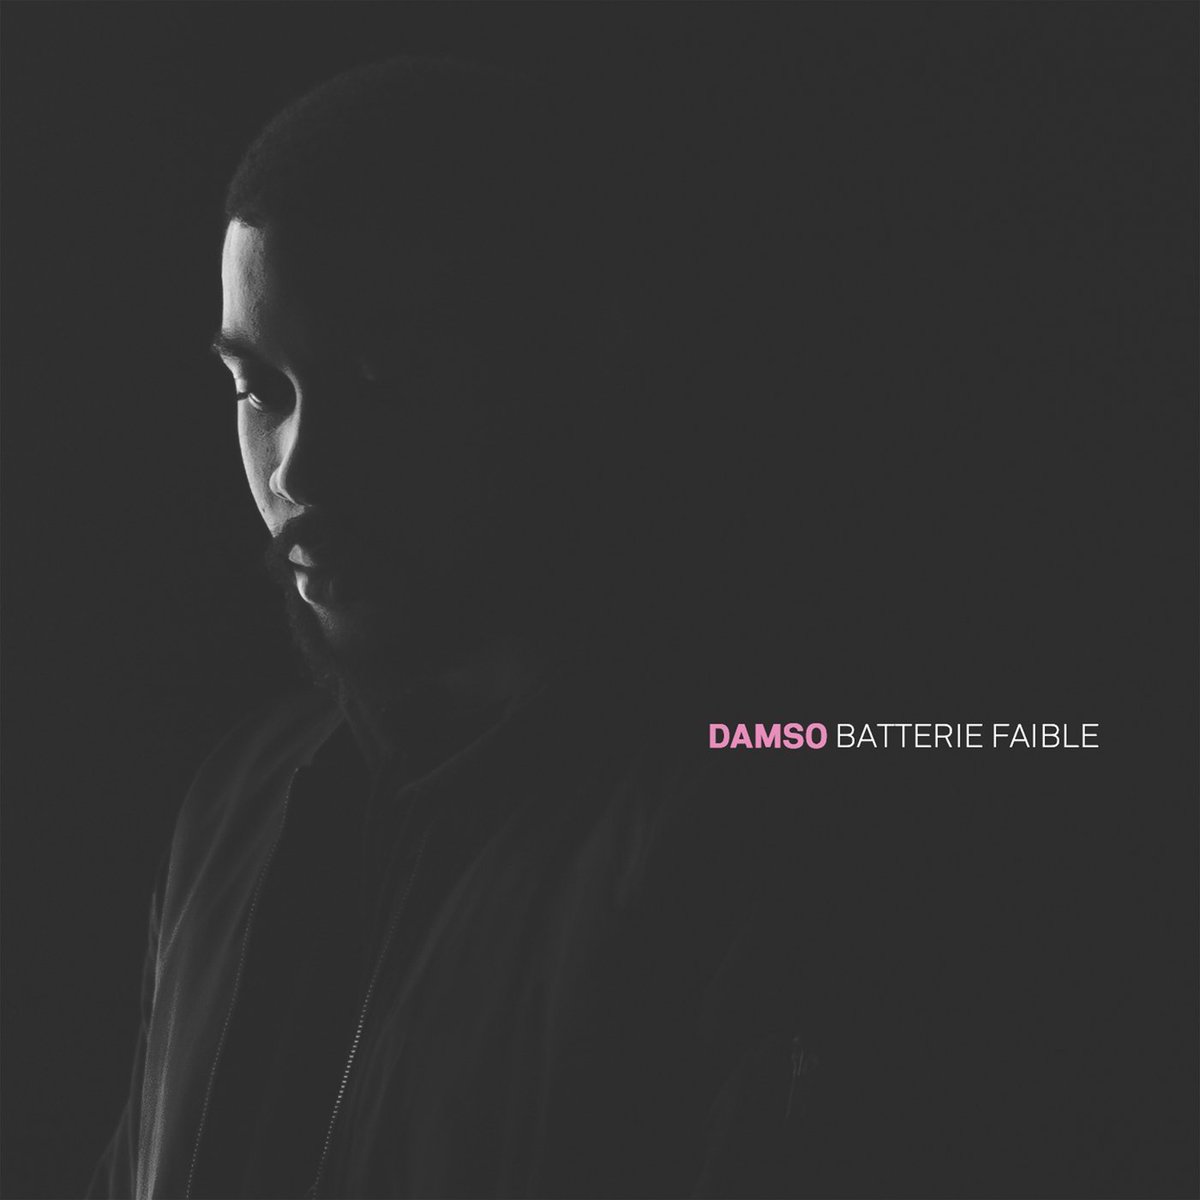 Batterie FaiblePremier Album de Damso, il est sorti le 8 Juillet 2016 sous le label Capitol Music France. il comporte 12 sons, et 2 bonus (j'en parlerais légèrement). L'album est disque de Platine avec 135k ventes. 9/10